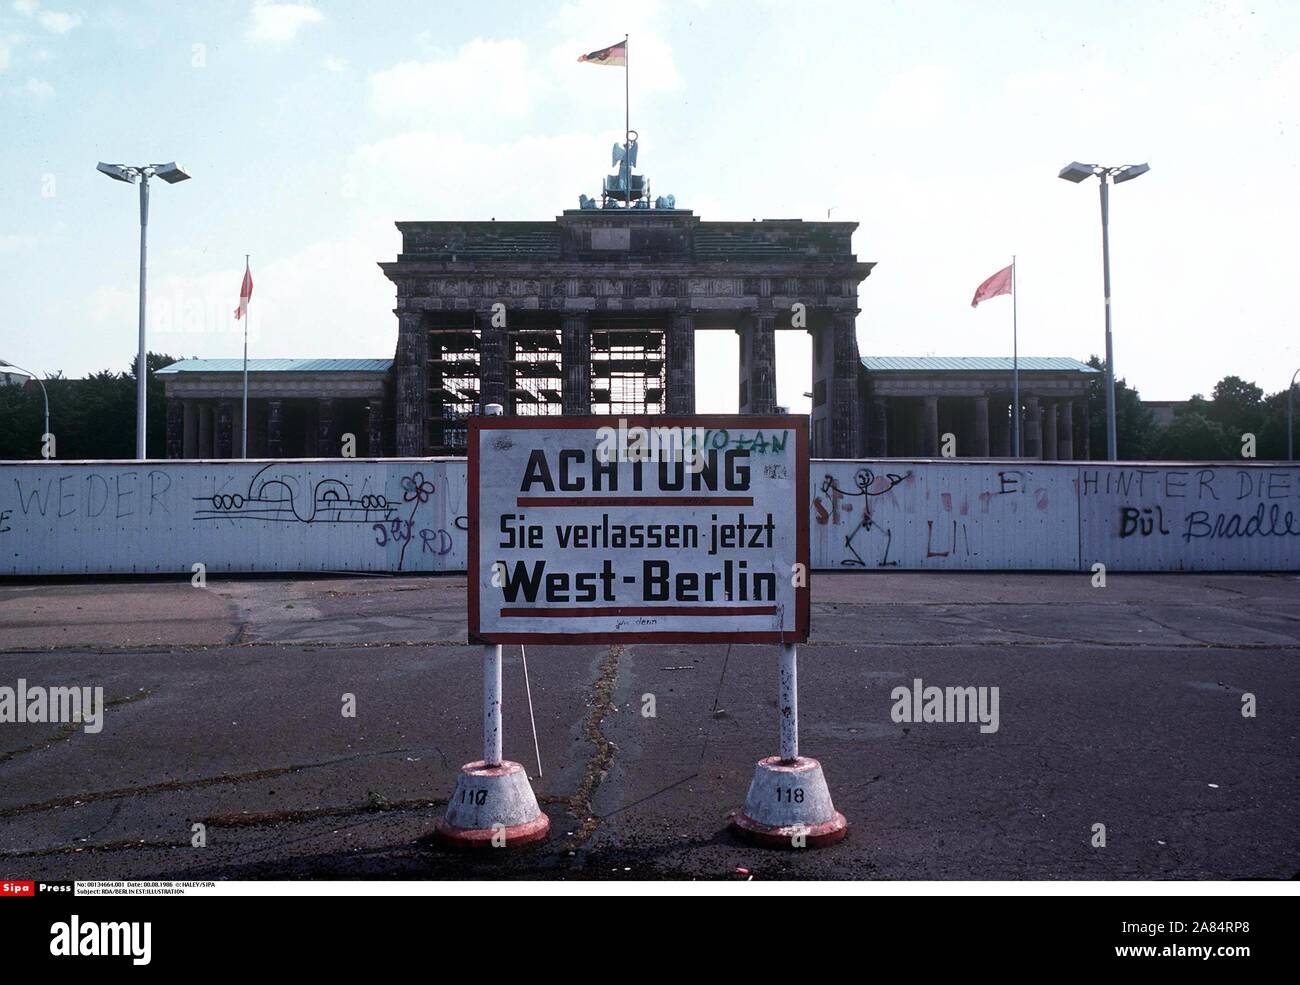 Una vista del "muro di Berlino e Porta di Brandeburgo, simbolo della città di Berl. Un segno bordo in tedesco avvisa "Stai lasciando Berlino Ovest". Il muro di Berlino era stato eretto in Agosto 13, 1961 da la RDT (Repubblica Democratica Tedesca) al reparto di imperialismo occidentale e ostacolare tedeschi orientali da rivelare all'Occidente. Berlino ovest, Germania ovest - 08/1986 (HALEY / SIPA/IPA / Fotogramma, BERLINO OVEST - 2014-10-17) ps la foto può essere utilizzato nel rispetto del contesto in cui è stato preso e senza intento diffamatorio del decoro delle persone rappresentate editoriale solo di utilizzo Foto Stock